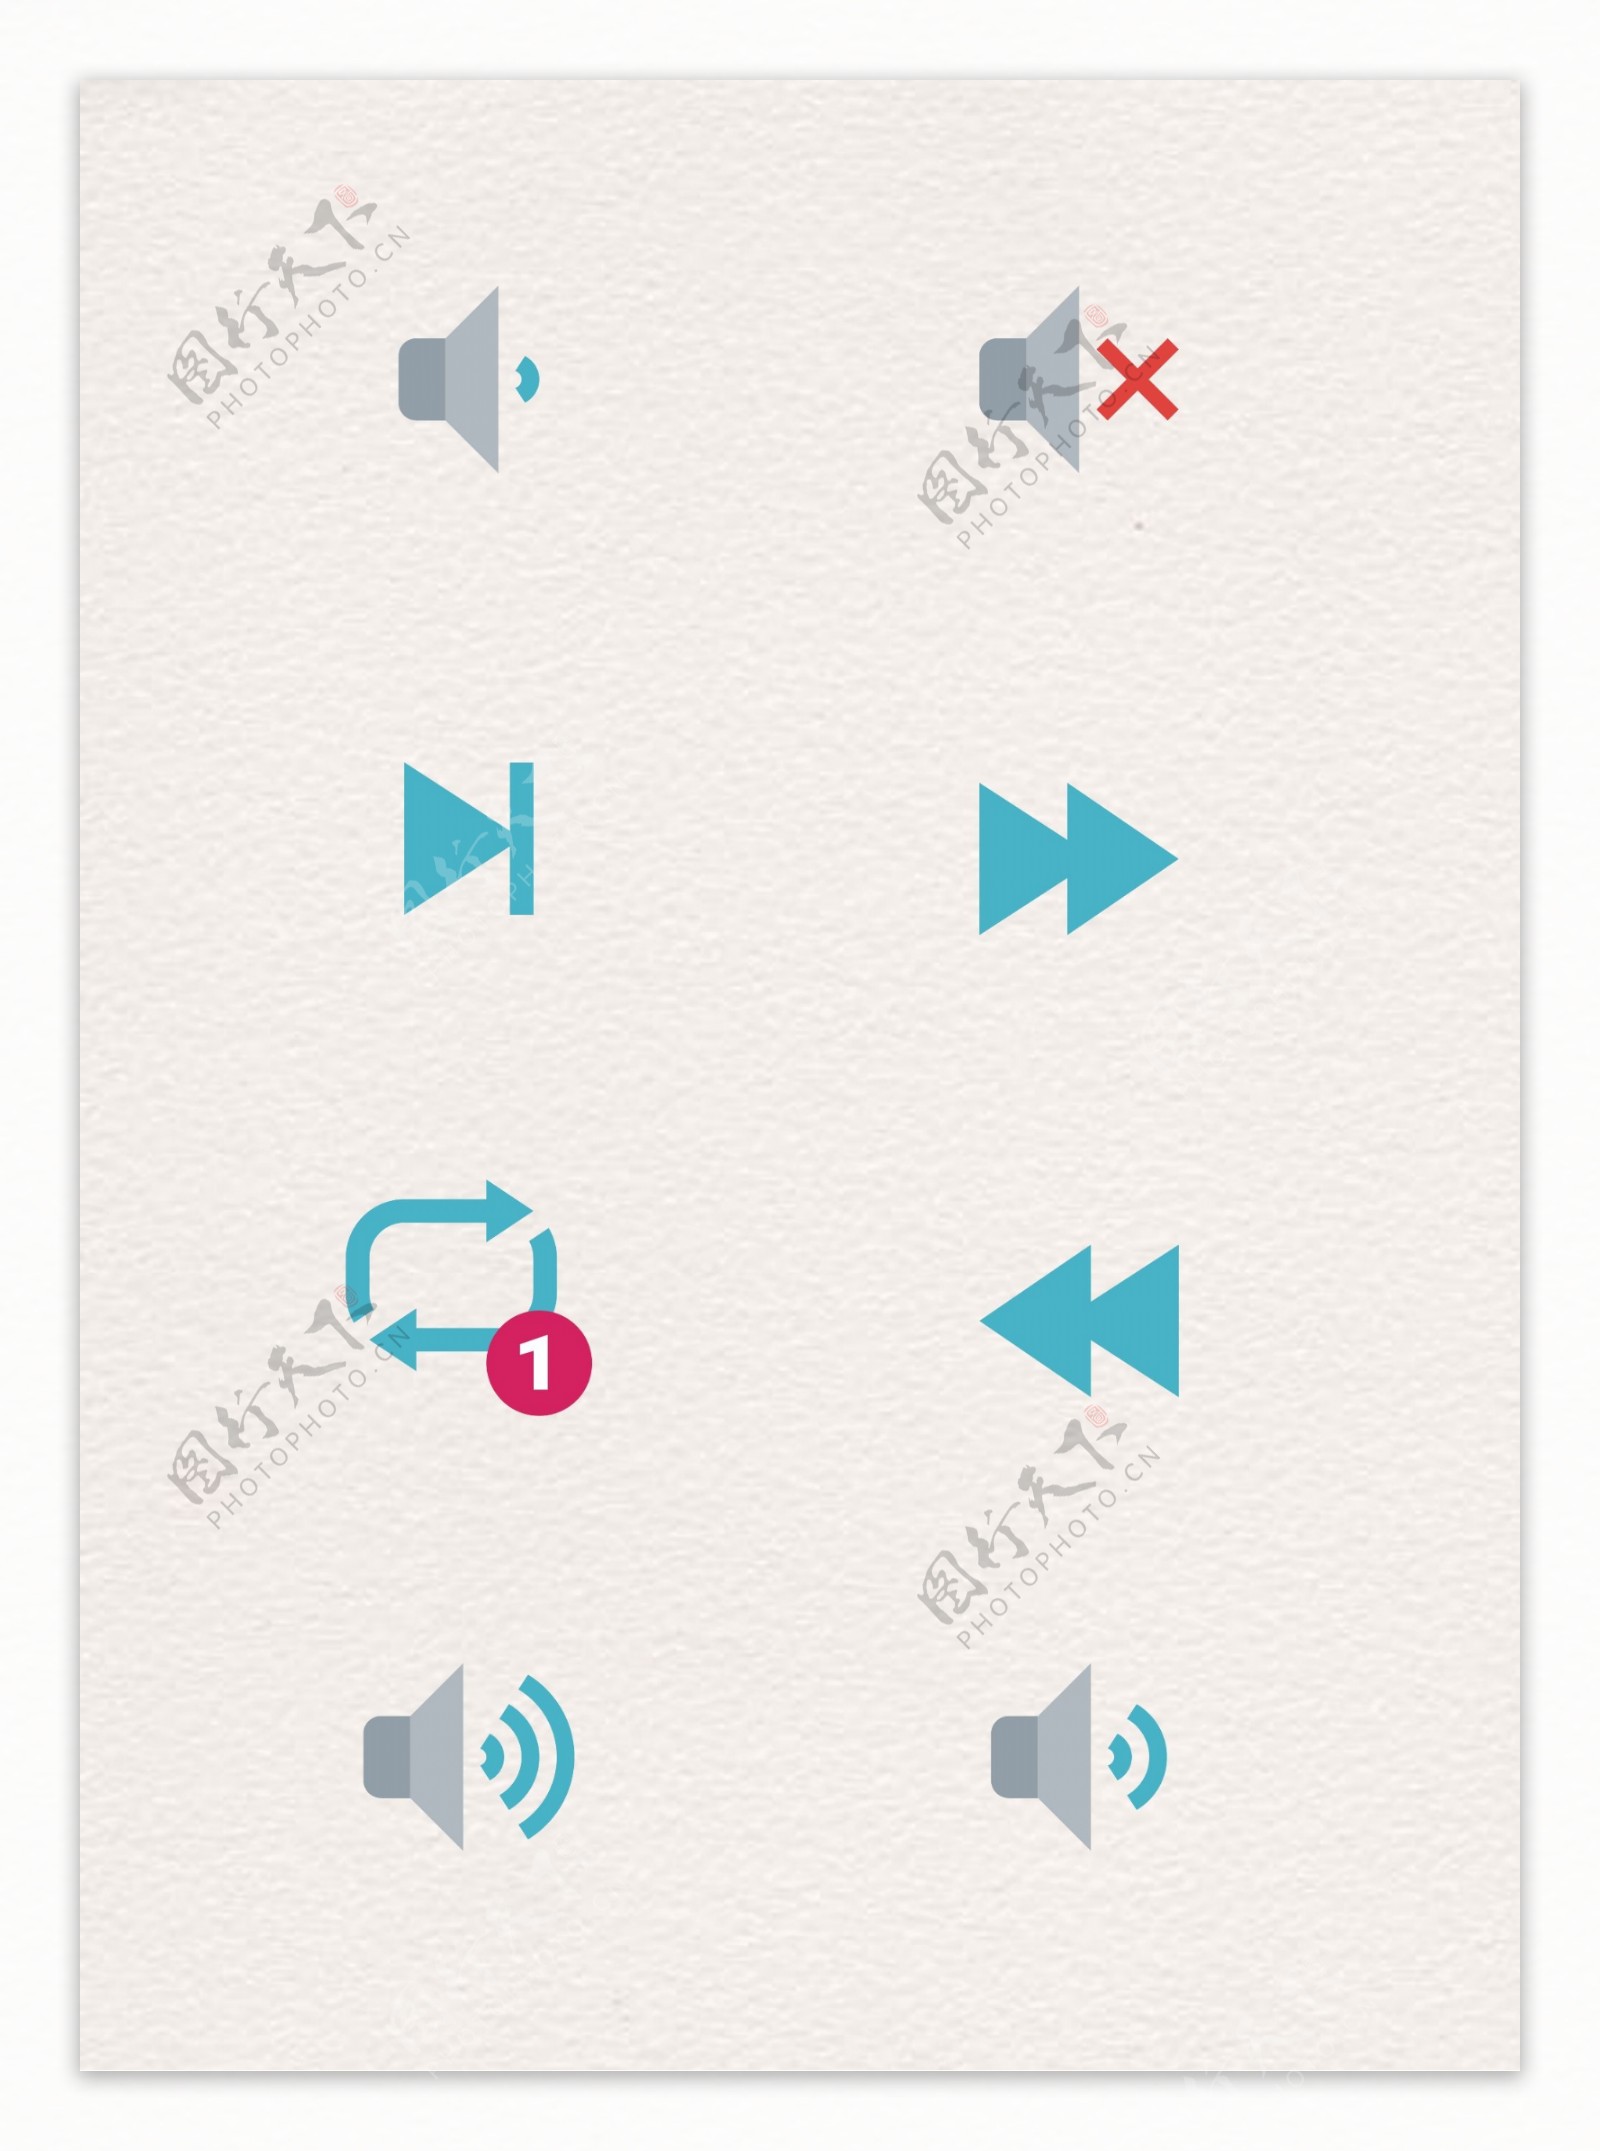 扁平化音乐播放功能按钮图标设计